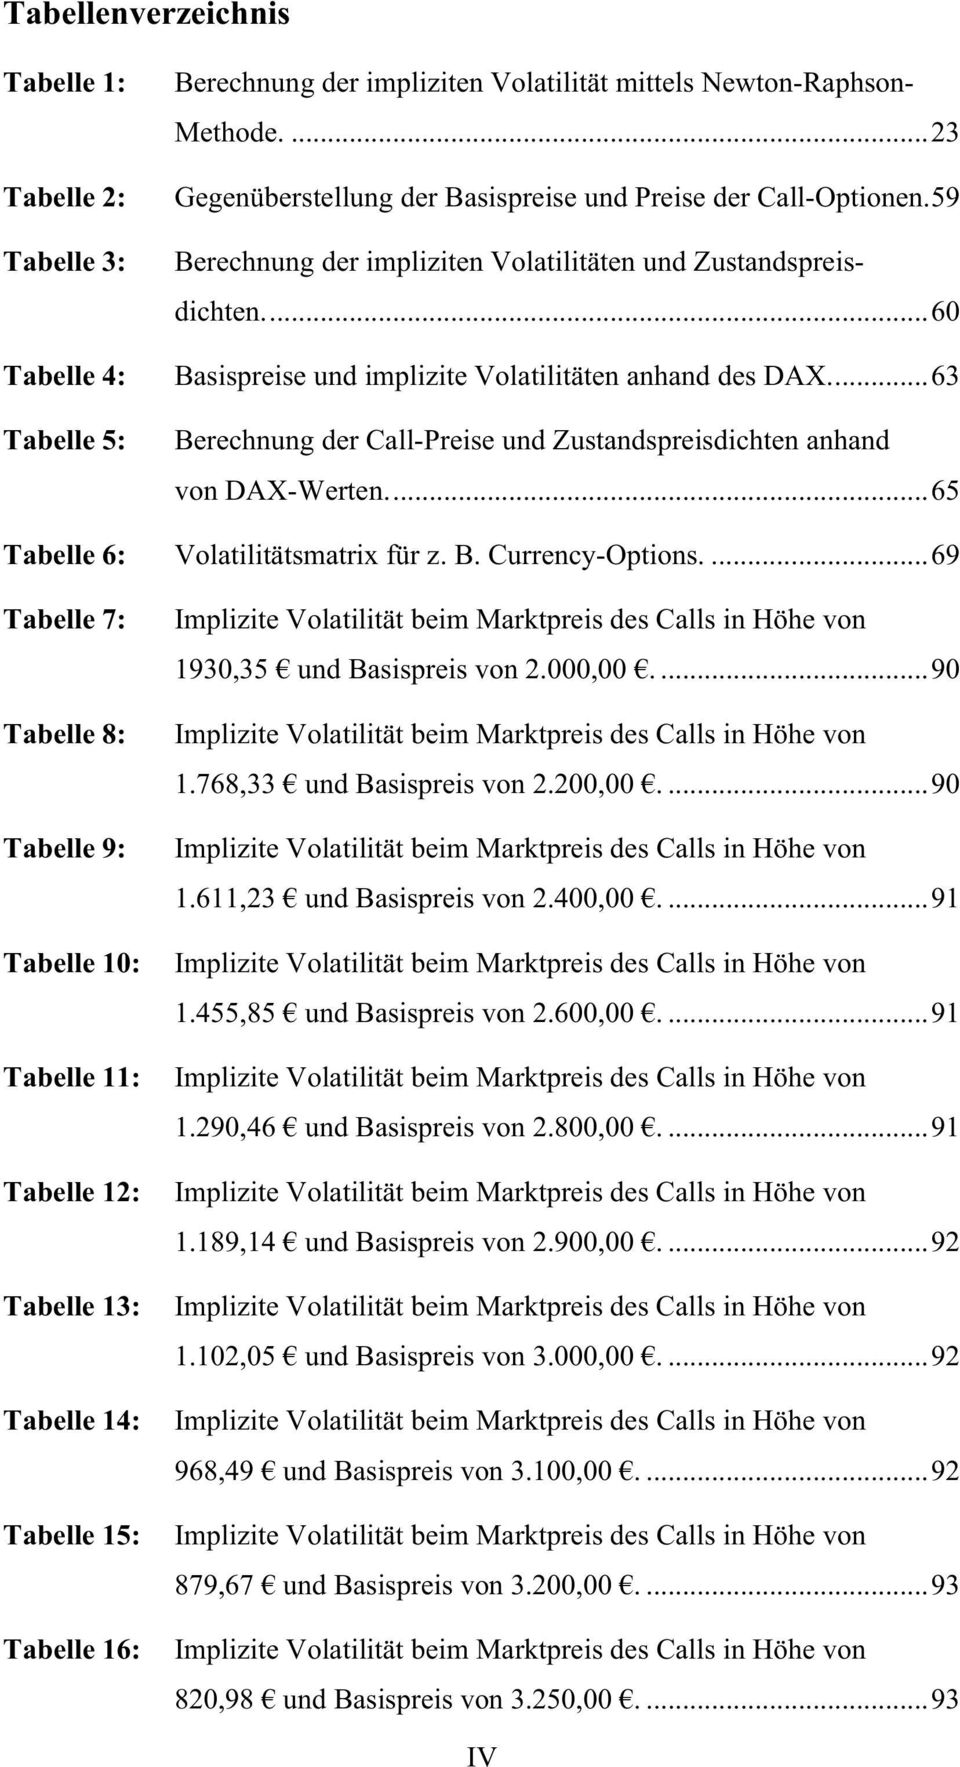 59 Berechnung der impliziten Volatilitäten und Zustandspreisdichten...60 Basispreise und implizite Volatilitäten anhand des DAX.